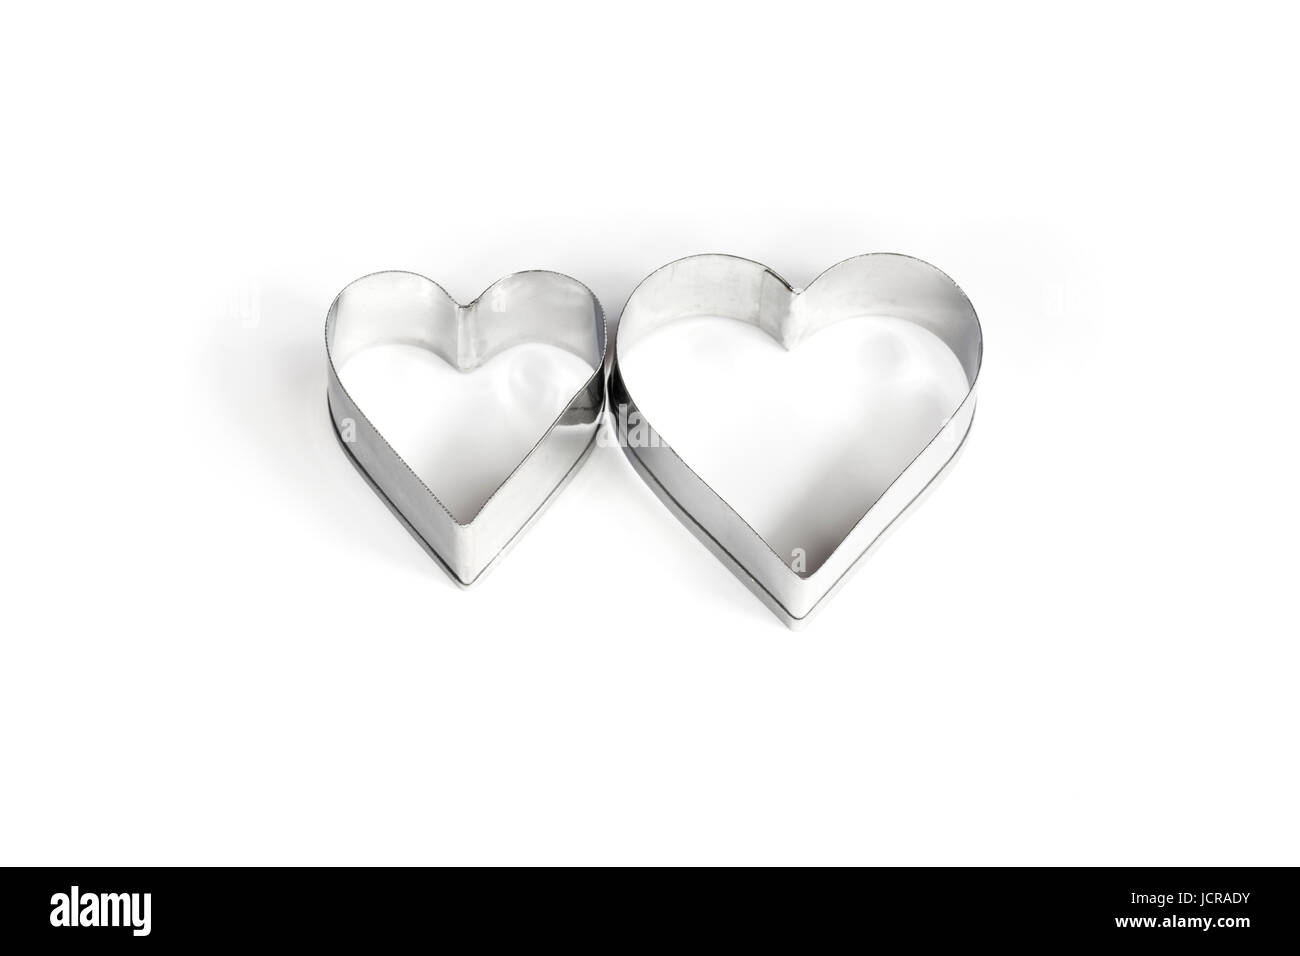 Dos corazones metálicos sobre fondo blanco. Foto de stock